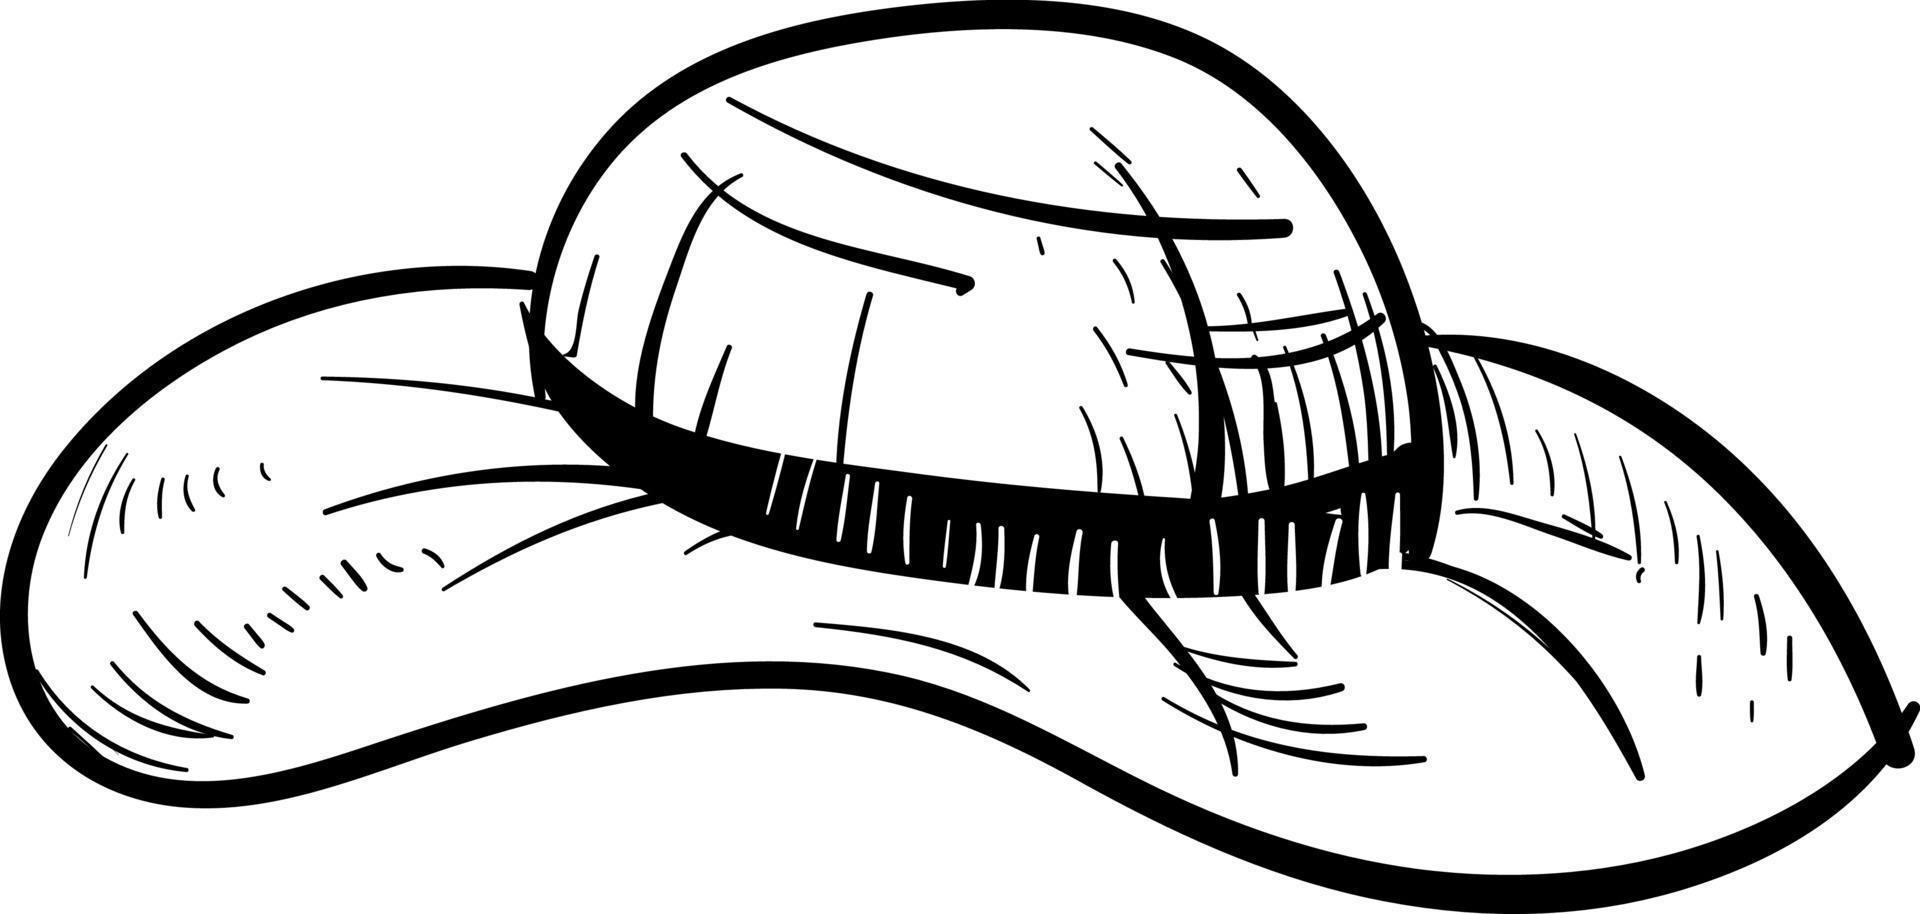 Sombrero de mujer dibujo, ilustración, vector sobre fondo blanco.